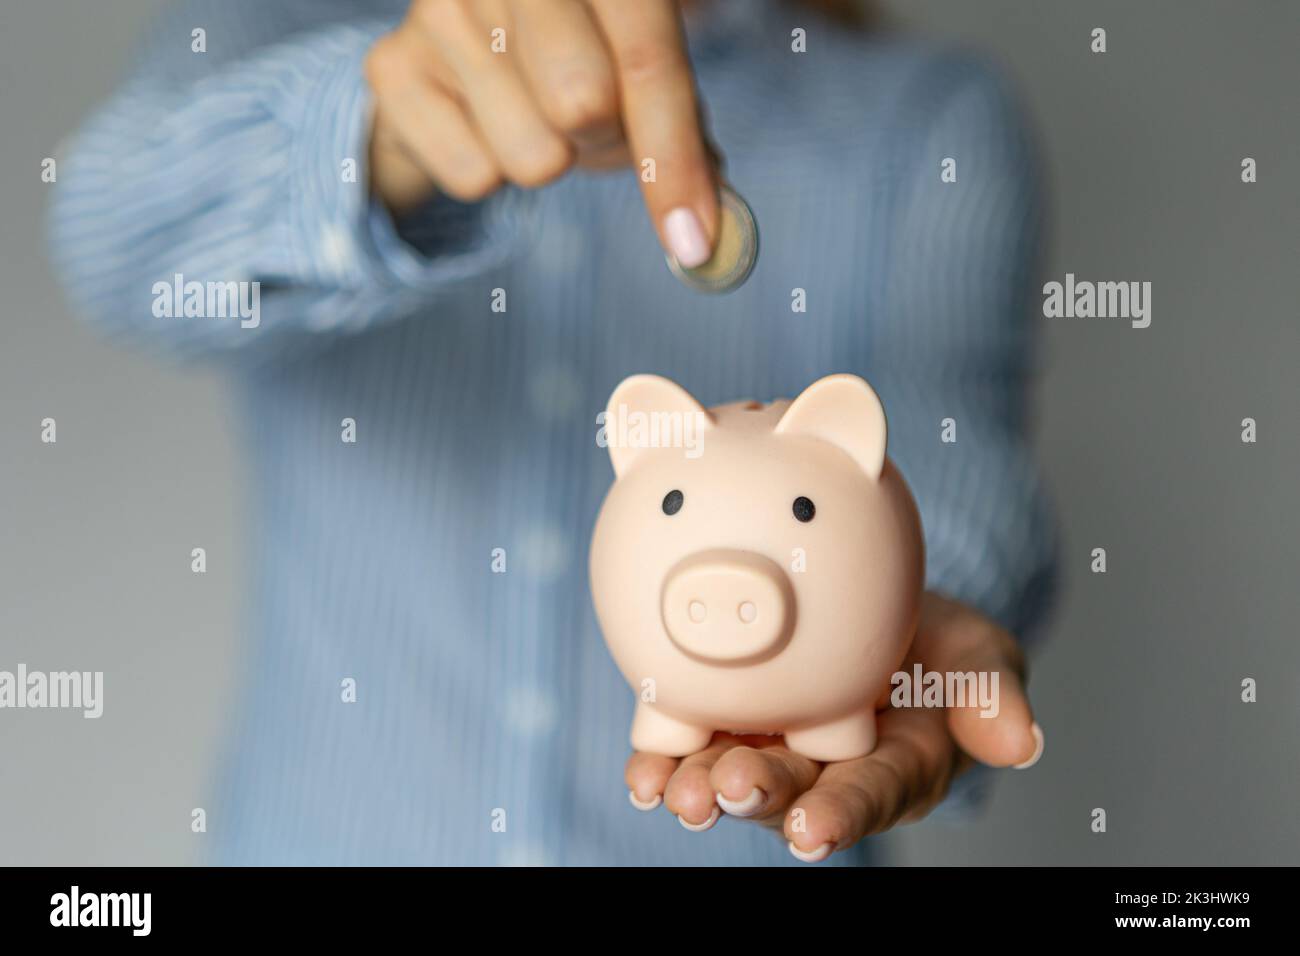 le mani femminili hanno messo i soldi dell'euro in una banca rosa del piggy. Il concetto di risparmio di denaro o di risparmio, investimento Foto Stock